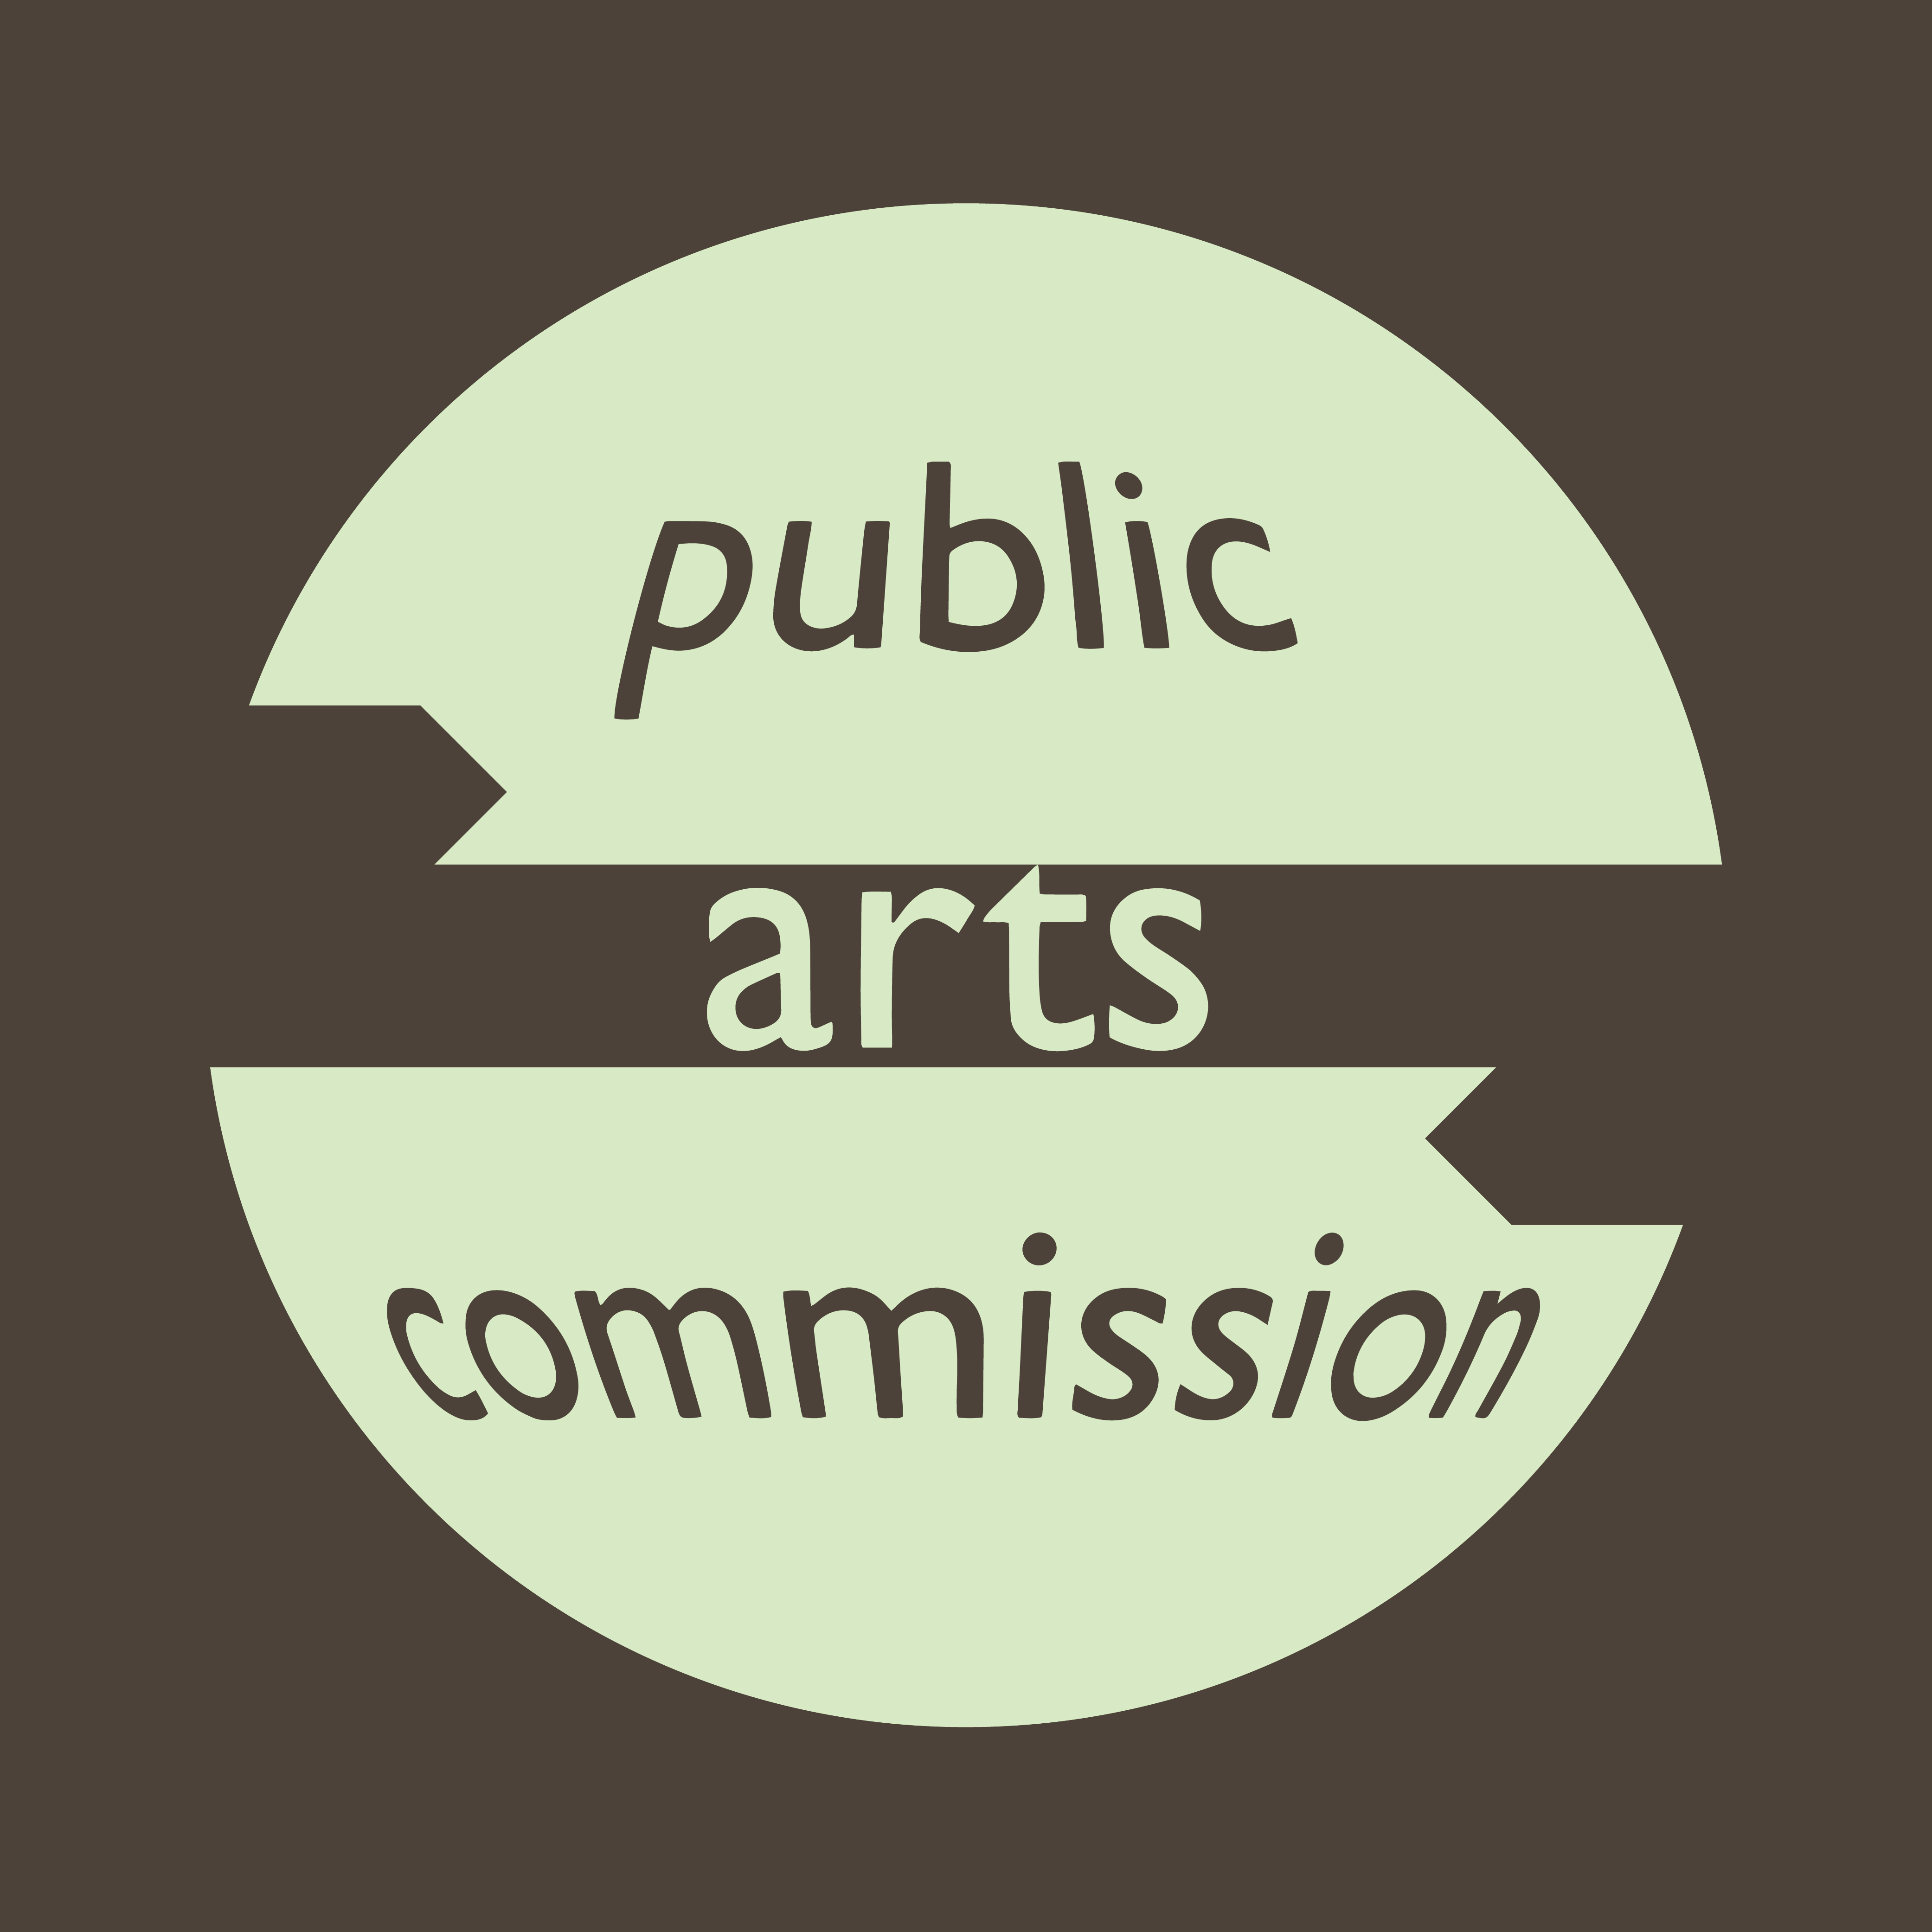 public arts commission - image 1